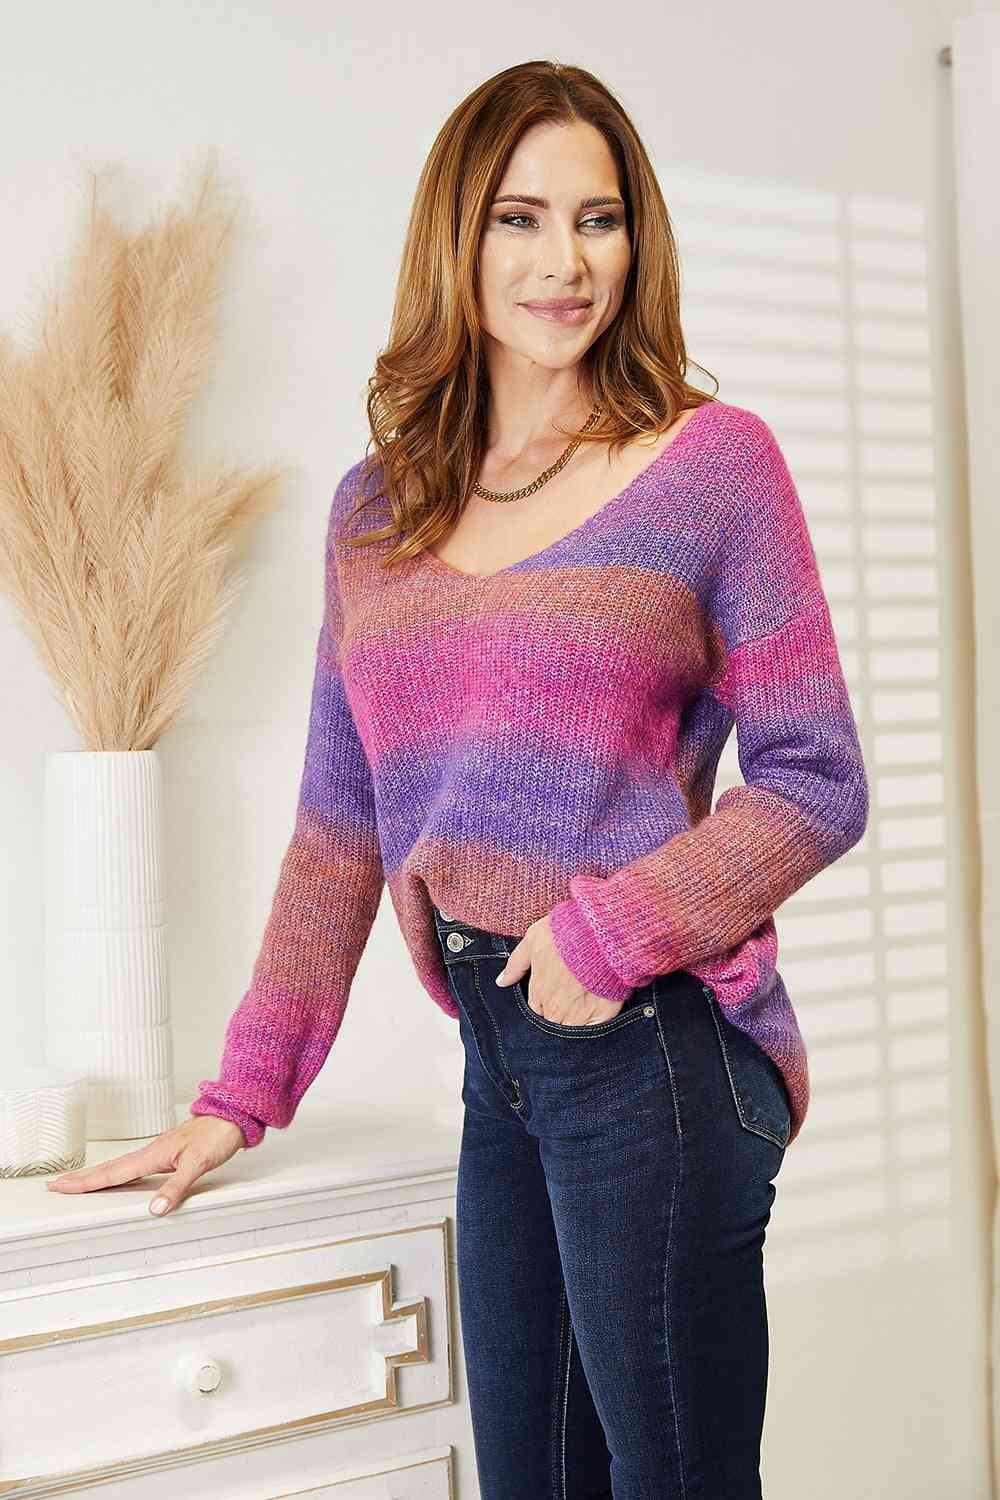 Stephanie Sweater